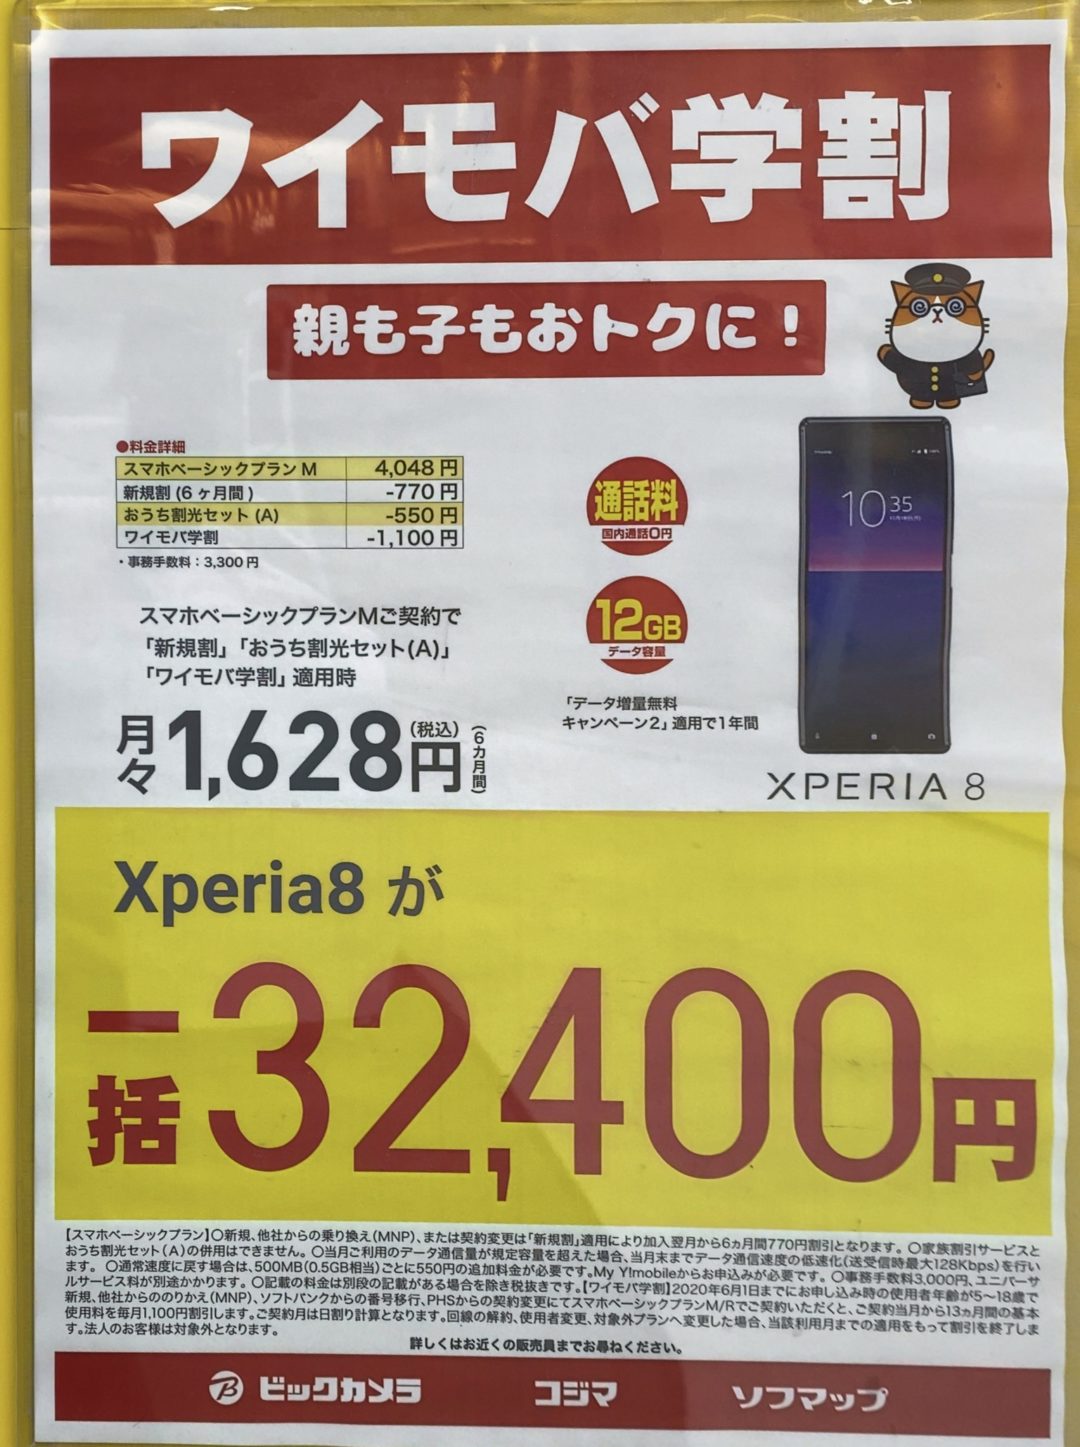 ビックカメラでワイモバイルのxperia 8が一括32 400円で案内 12 16 月 から家電量販店などで契約者限定のpaypayキャンペーンも